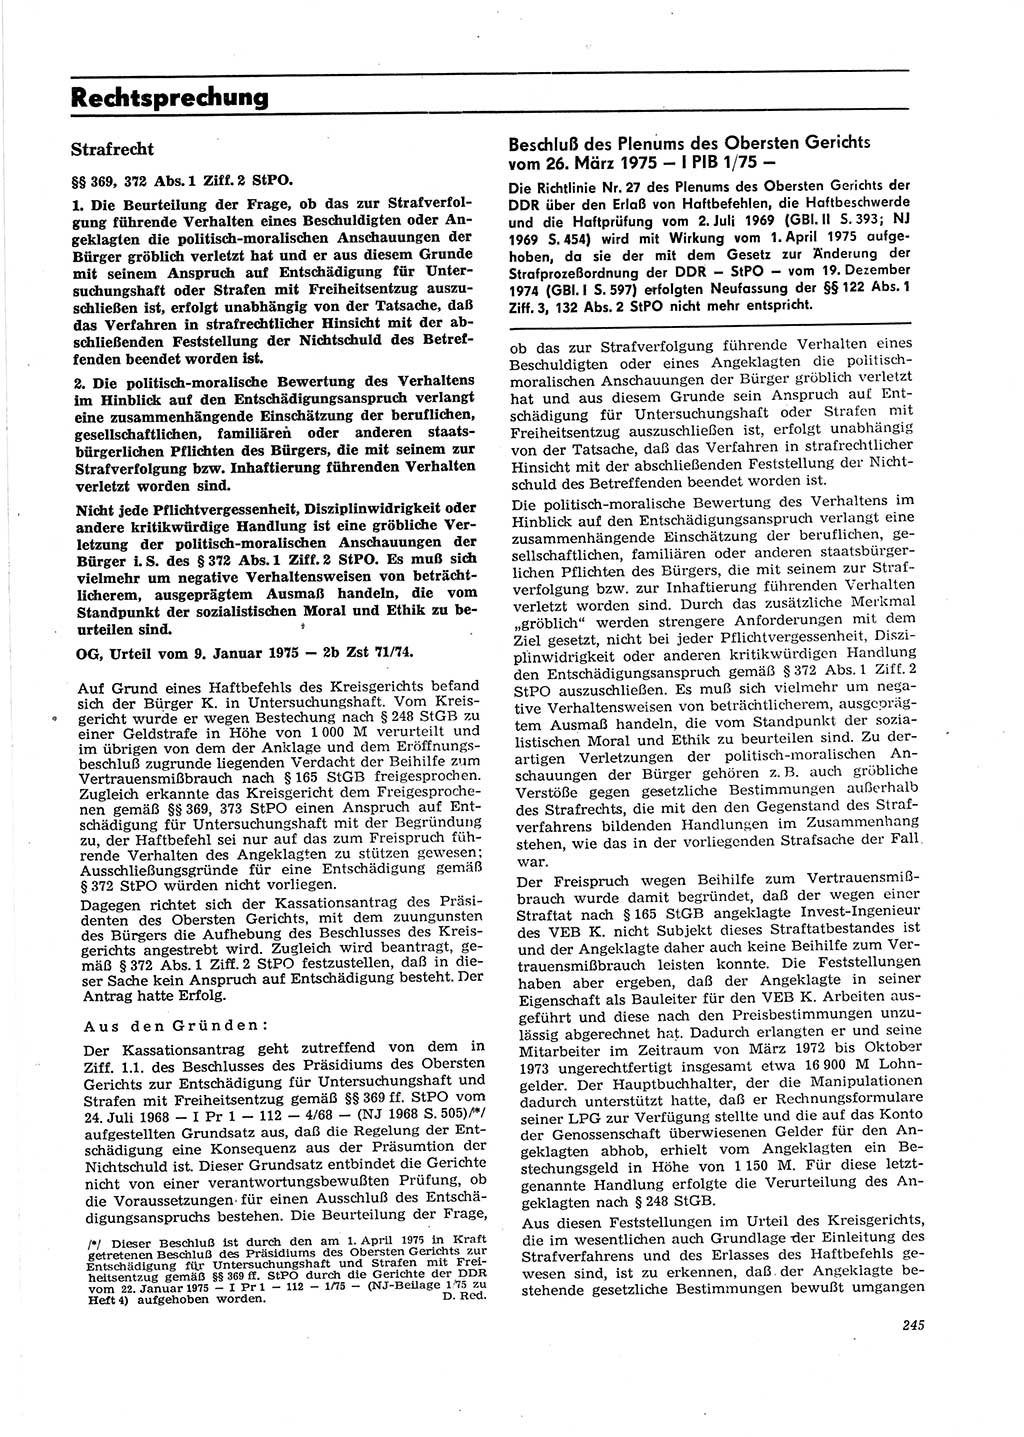 Neue Justiz (NJ), Zeitschrift für Recht und Rechtswissenschaft [Deutsche Demokratische Republik (DDR)], 29. Jahrgang 1975, Seite 245 (NJ DDR 1975, S. 245)